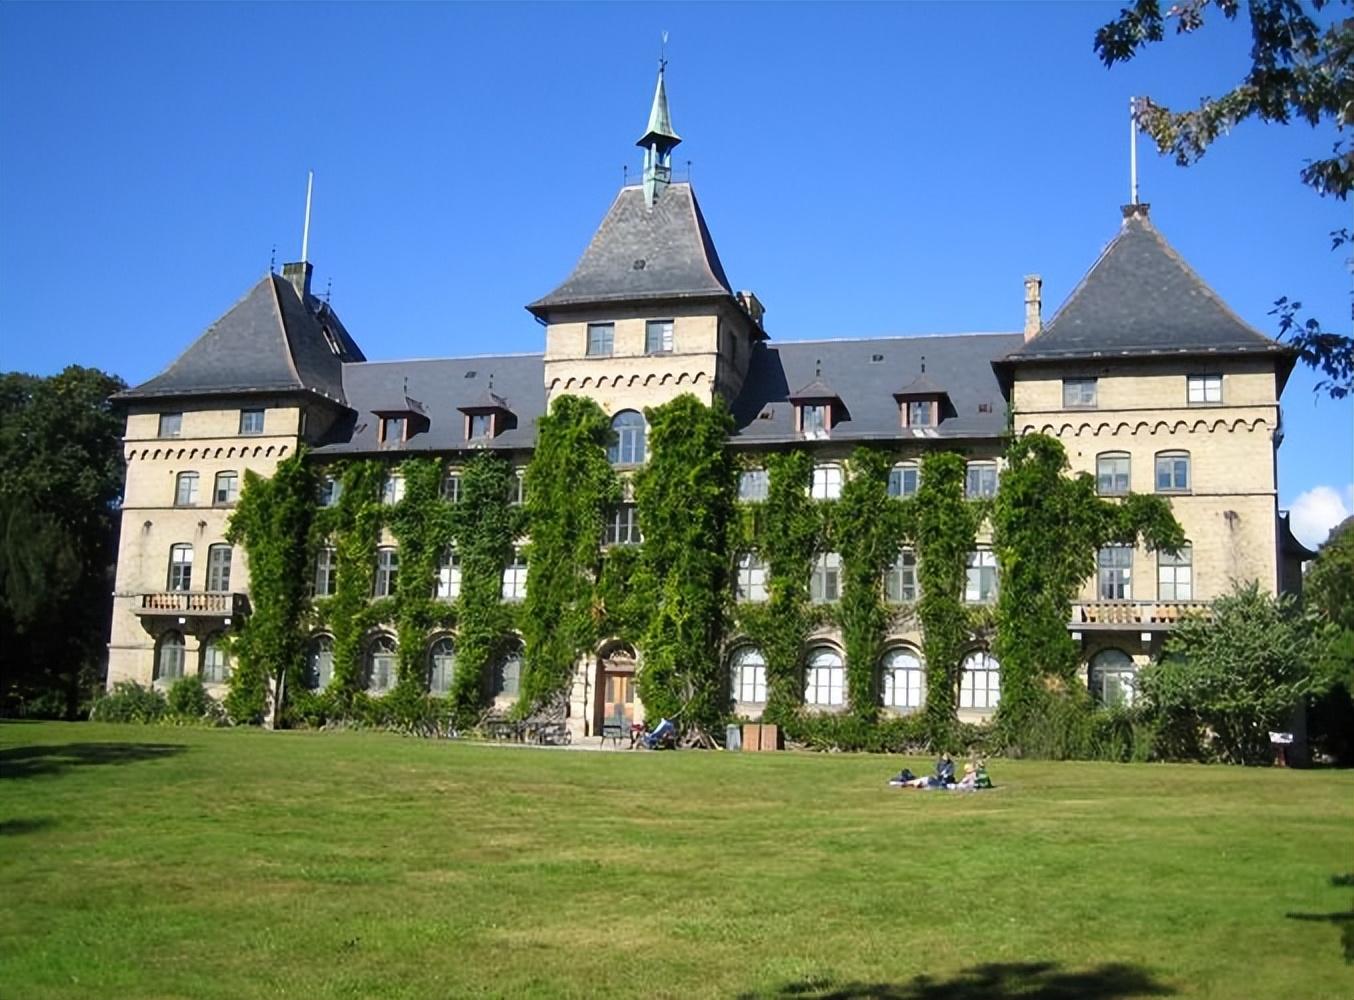 瑞典农业科学大学——瑞典乃至北欧最好的农业大学